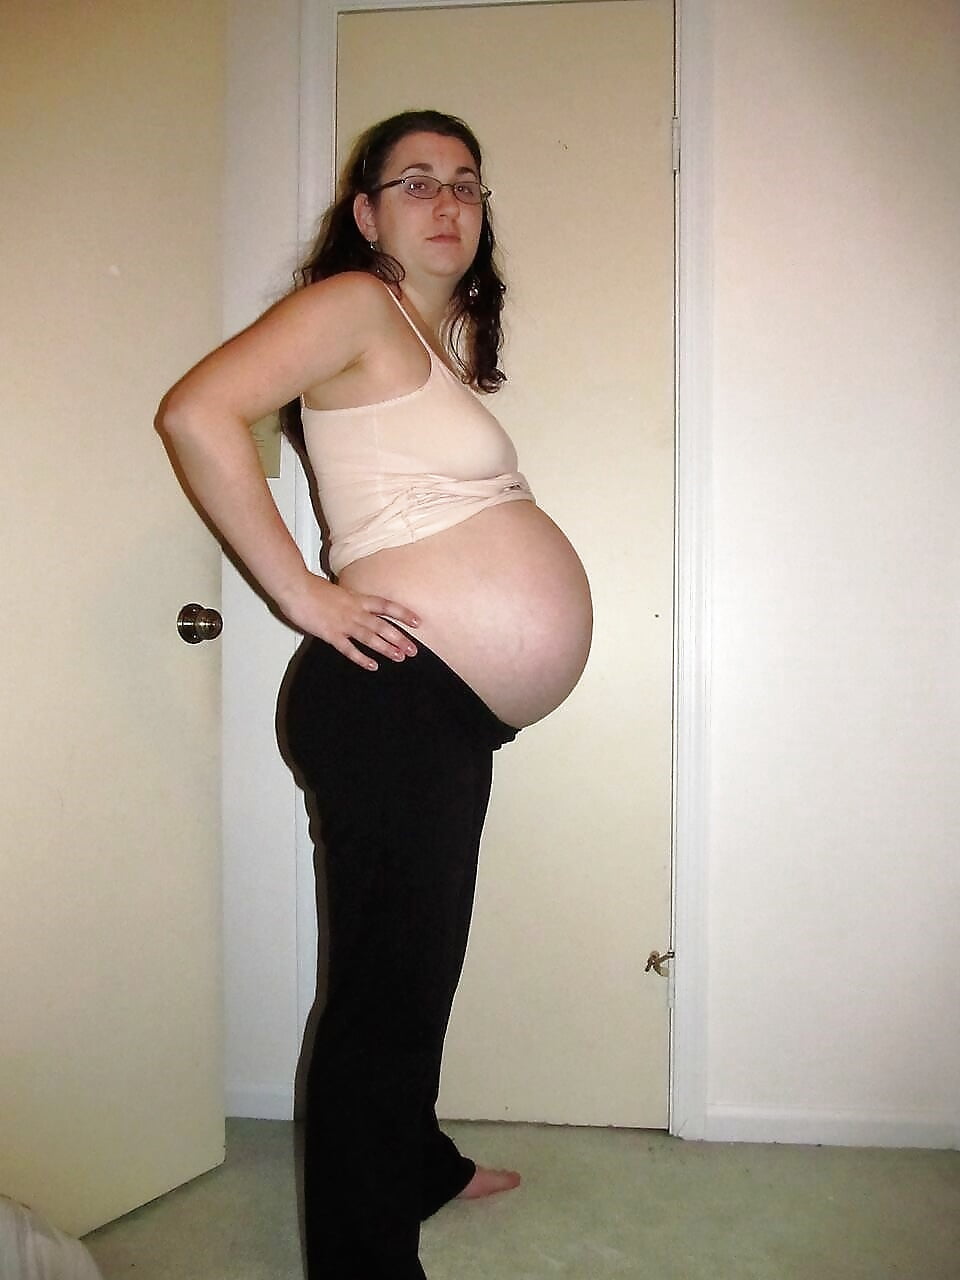 Hot pregnant teen pics-3987